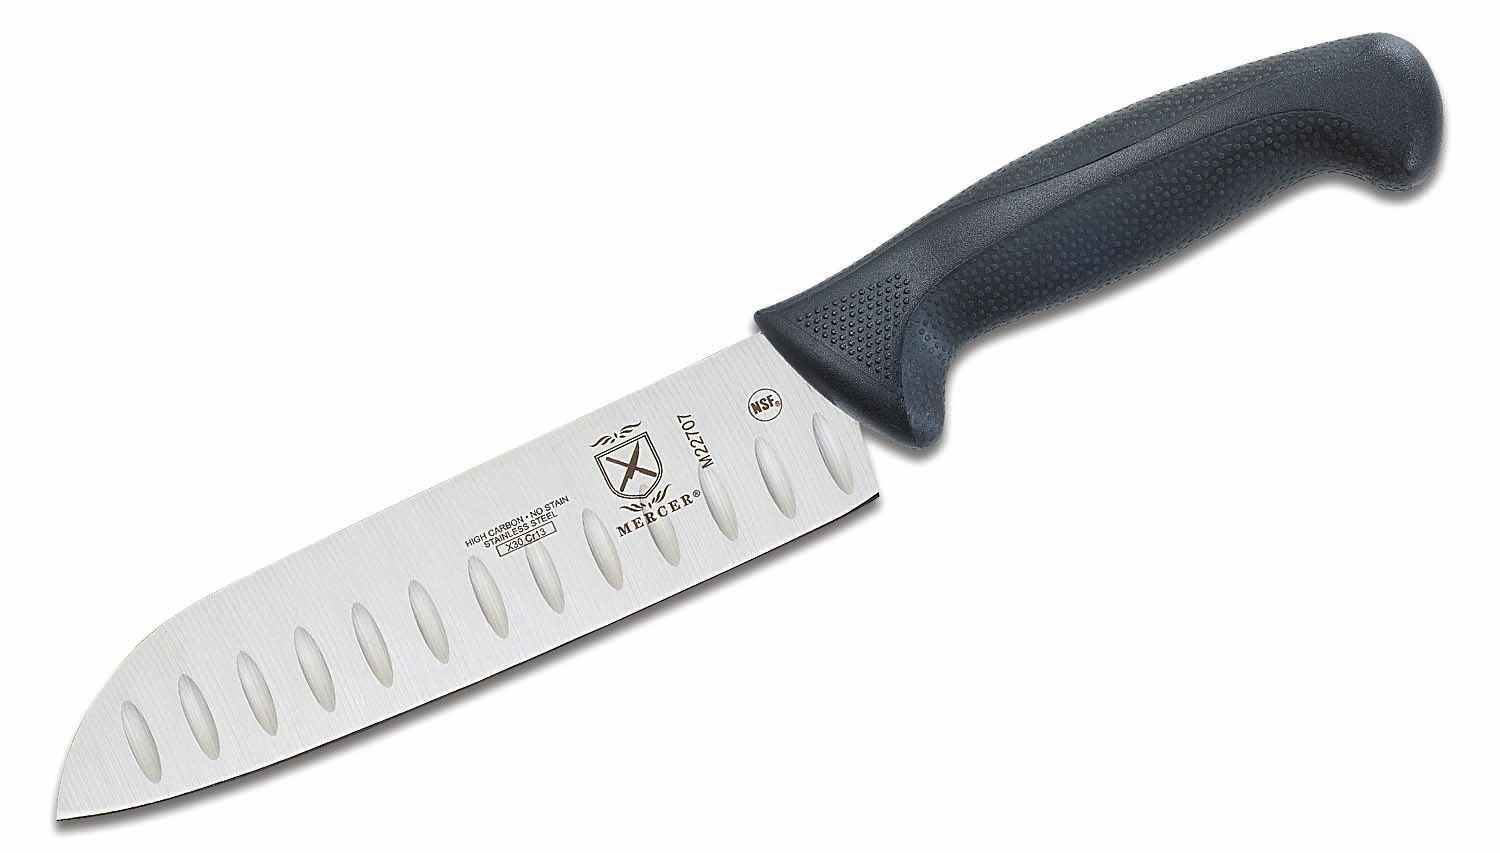 Mercer Cutlery Millennia 7 Santoku Knife - KnifeCenter - M22707